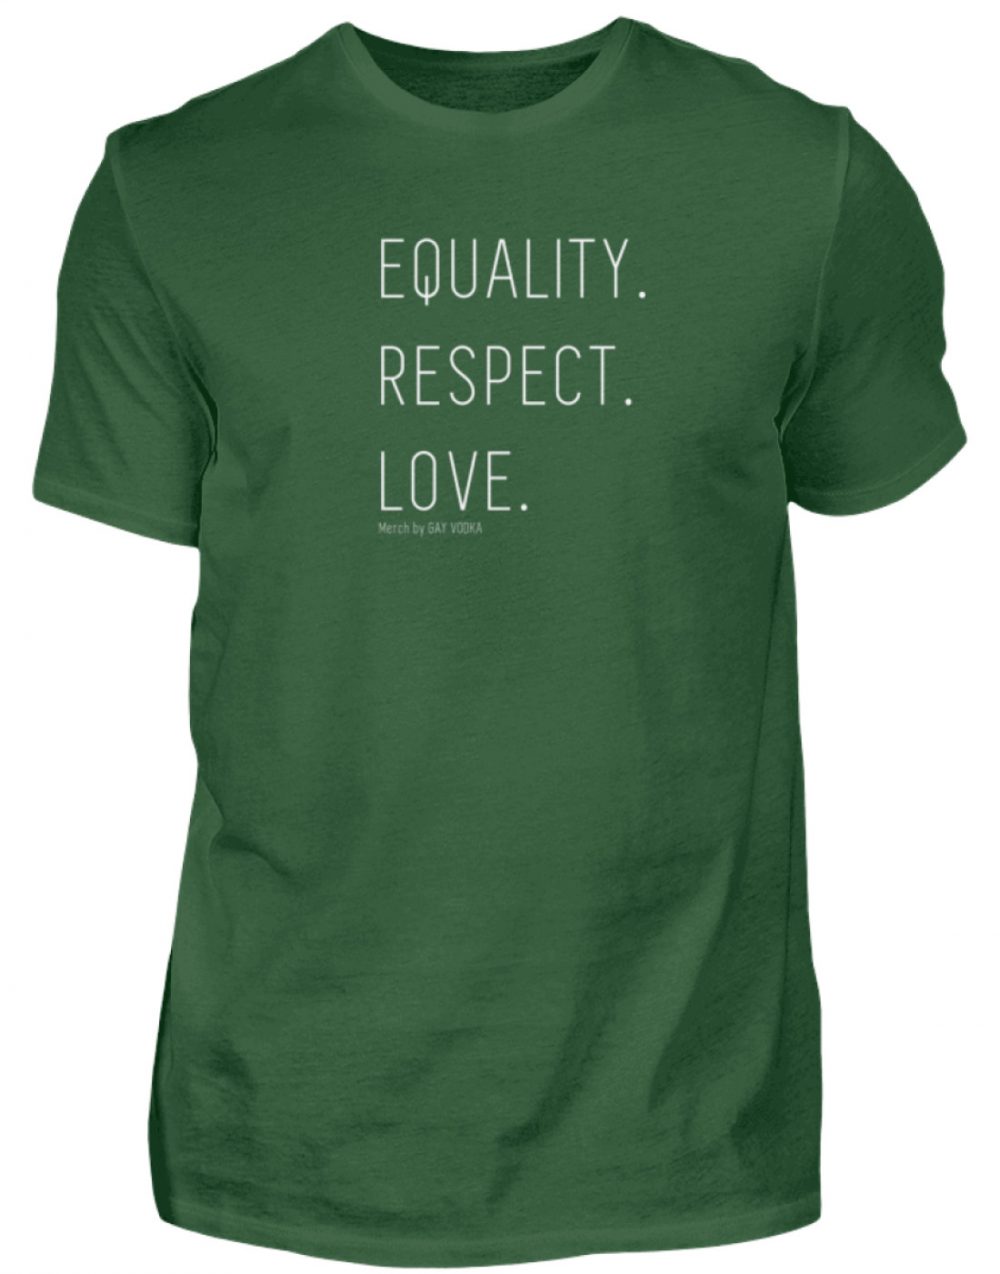 EQUALITY. RESPECT. LOVE. - Herren Shirt-833